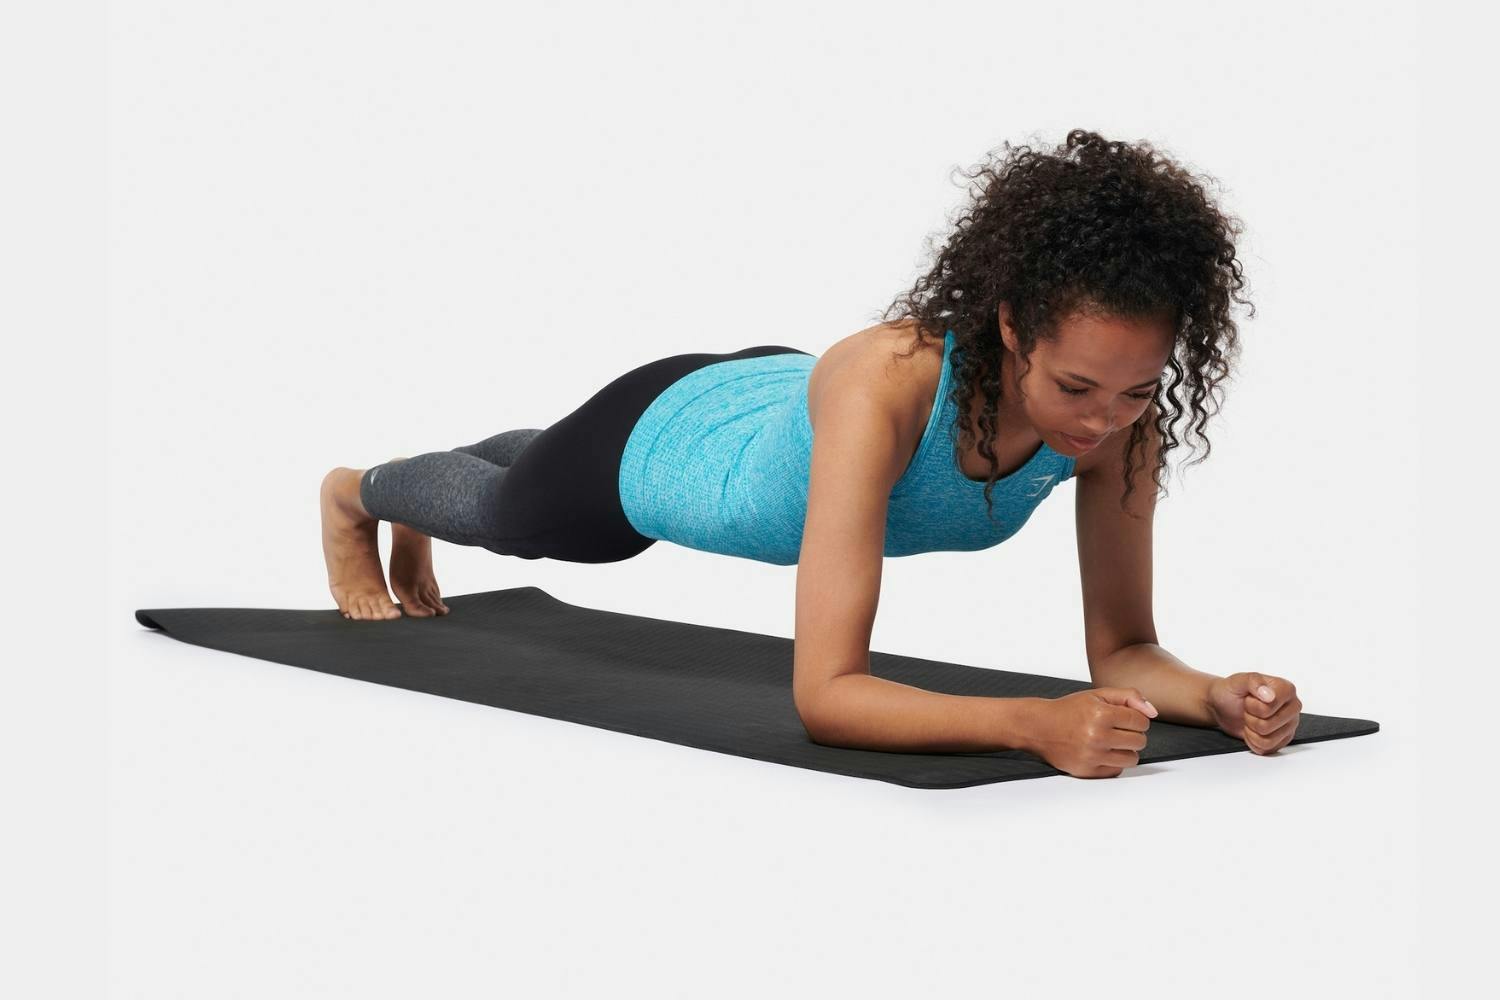 Fizfit Elite Fitness Yoga Mat, 6mm